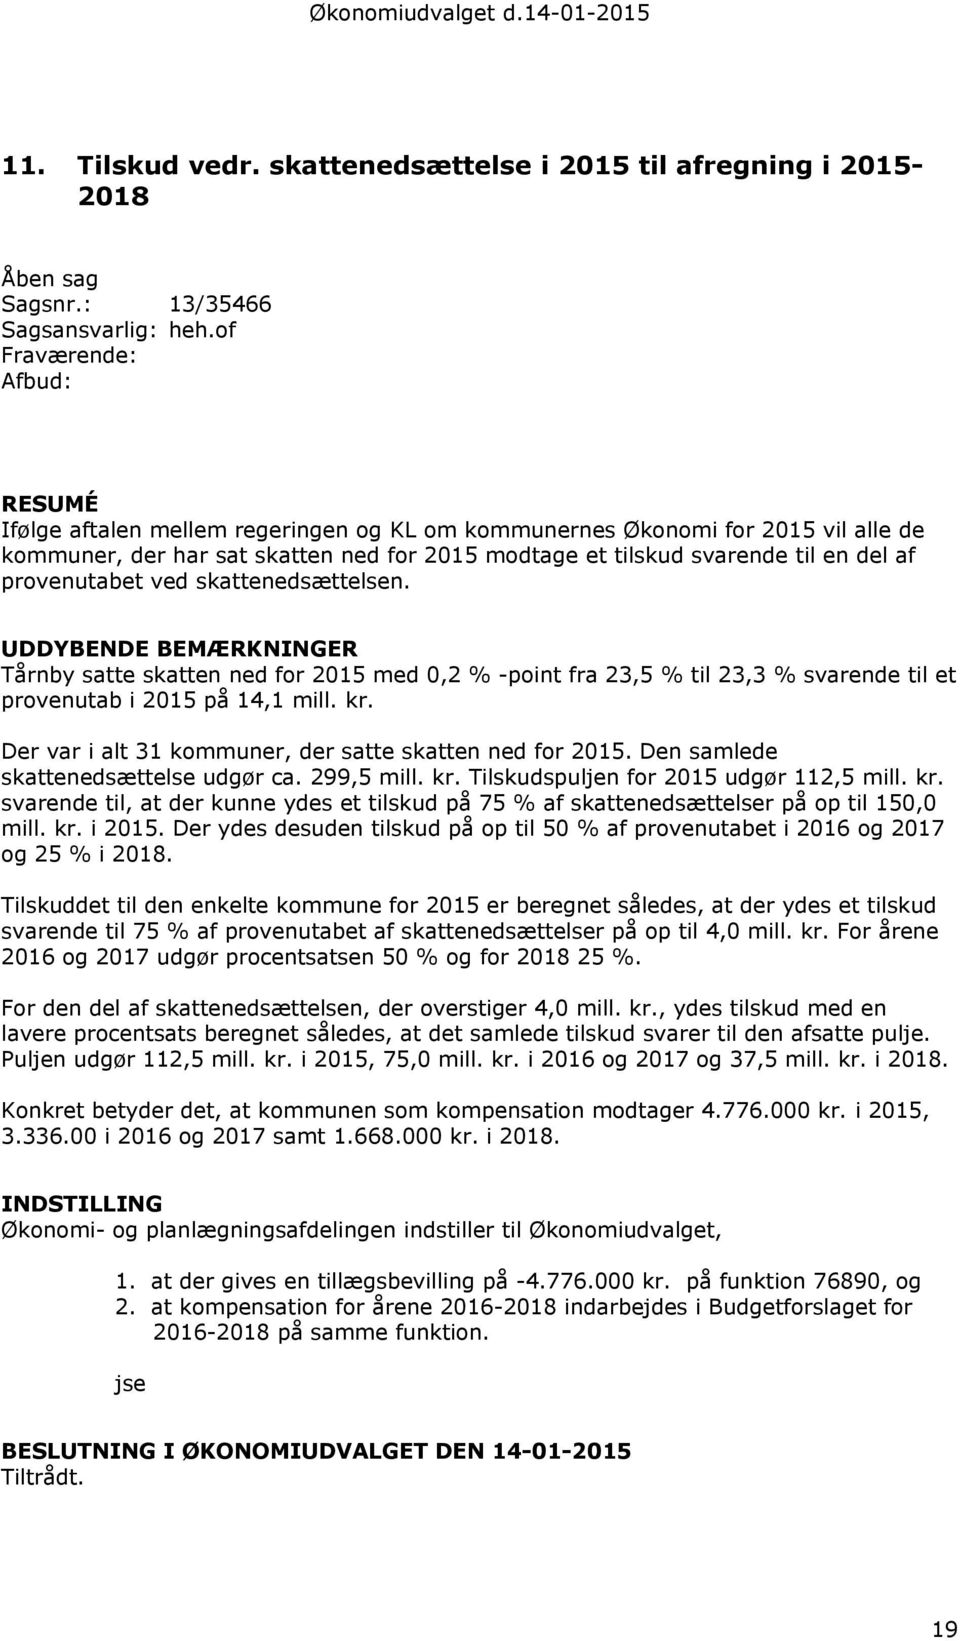 skattenedsættelsen. UDDYBENDE BEMÆRKNINGER Tårnby satte skatten ned for 2015 med 0,2 % -point fra 23,5 % til 23,3 % svarende til et provenutab i 2015 på 14,1 mill. kr.